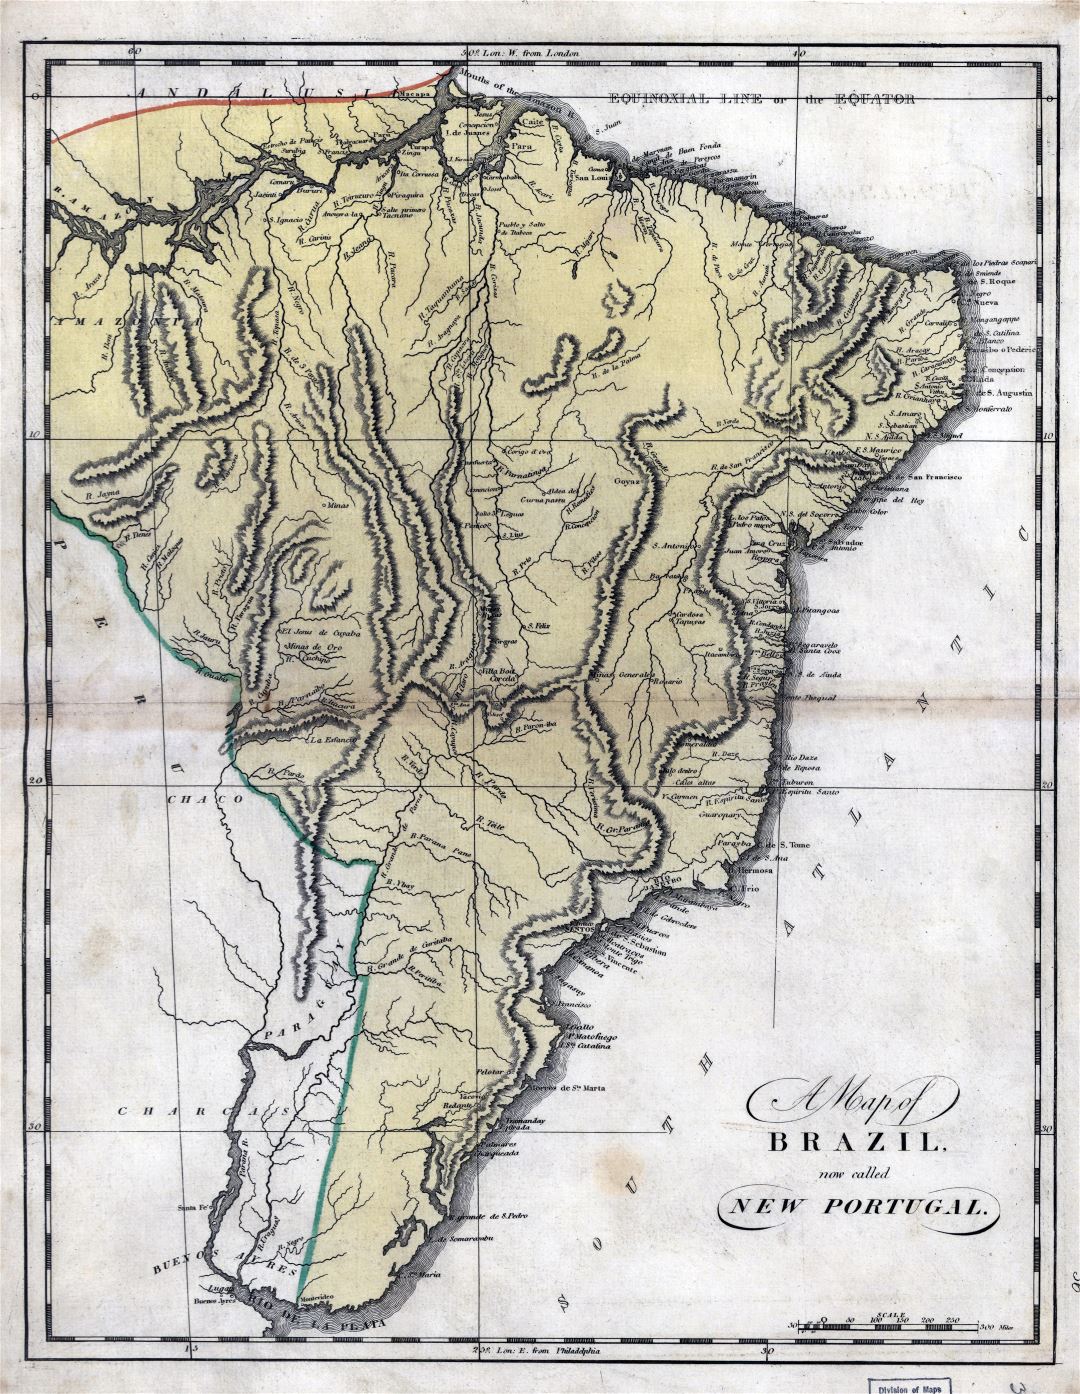 Grande detallado mapa antiguo de Brasil (Nuevo Portugal) con marcas - 1814